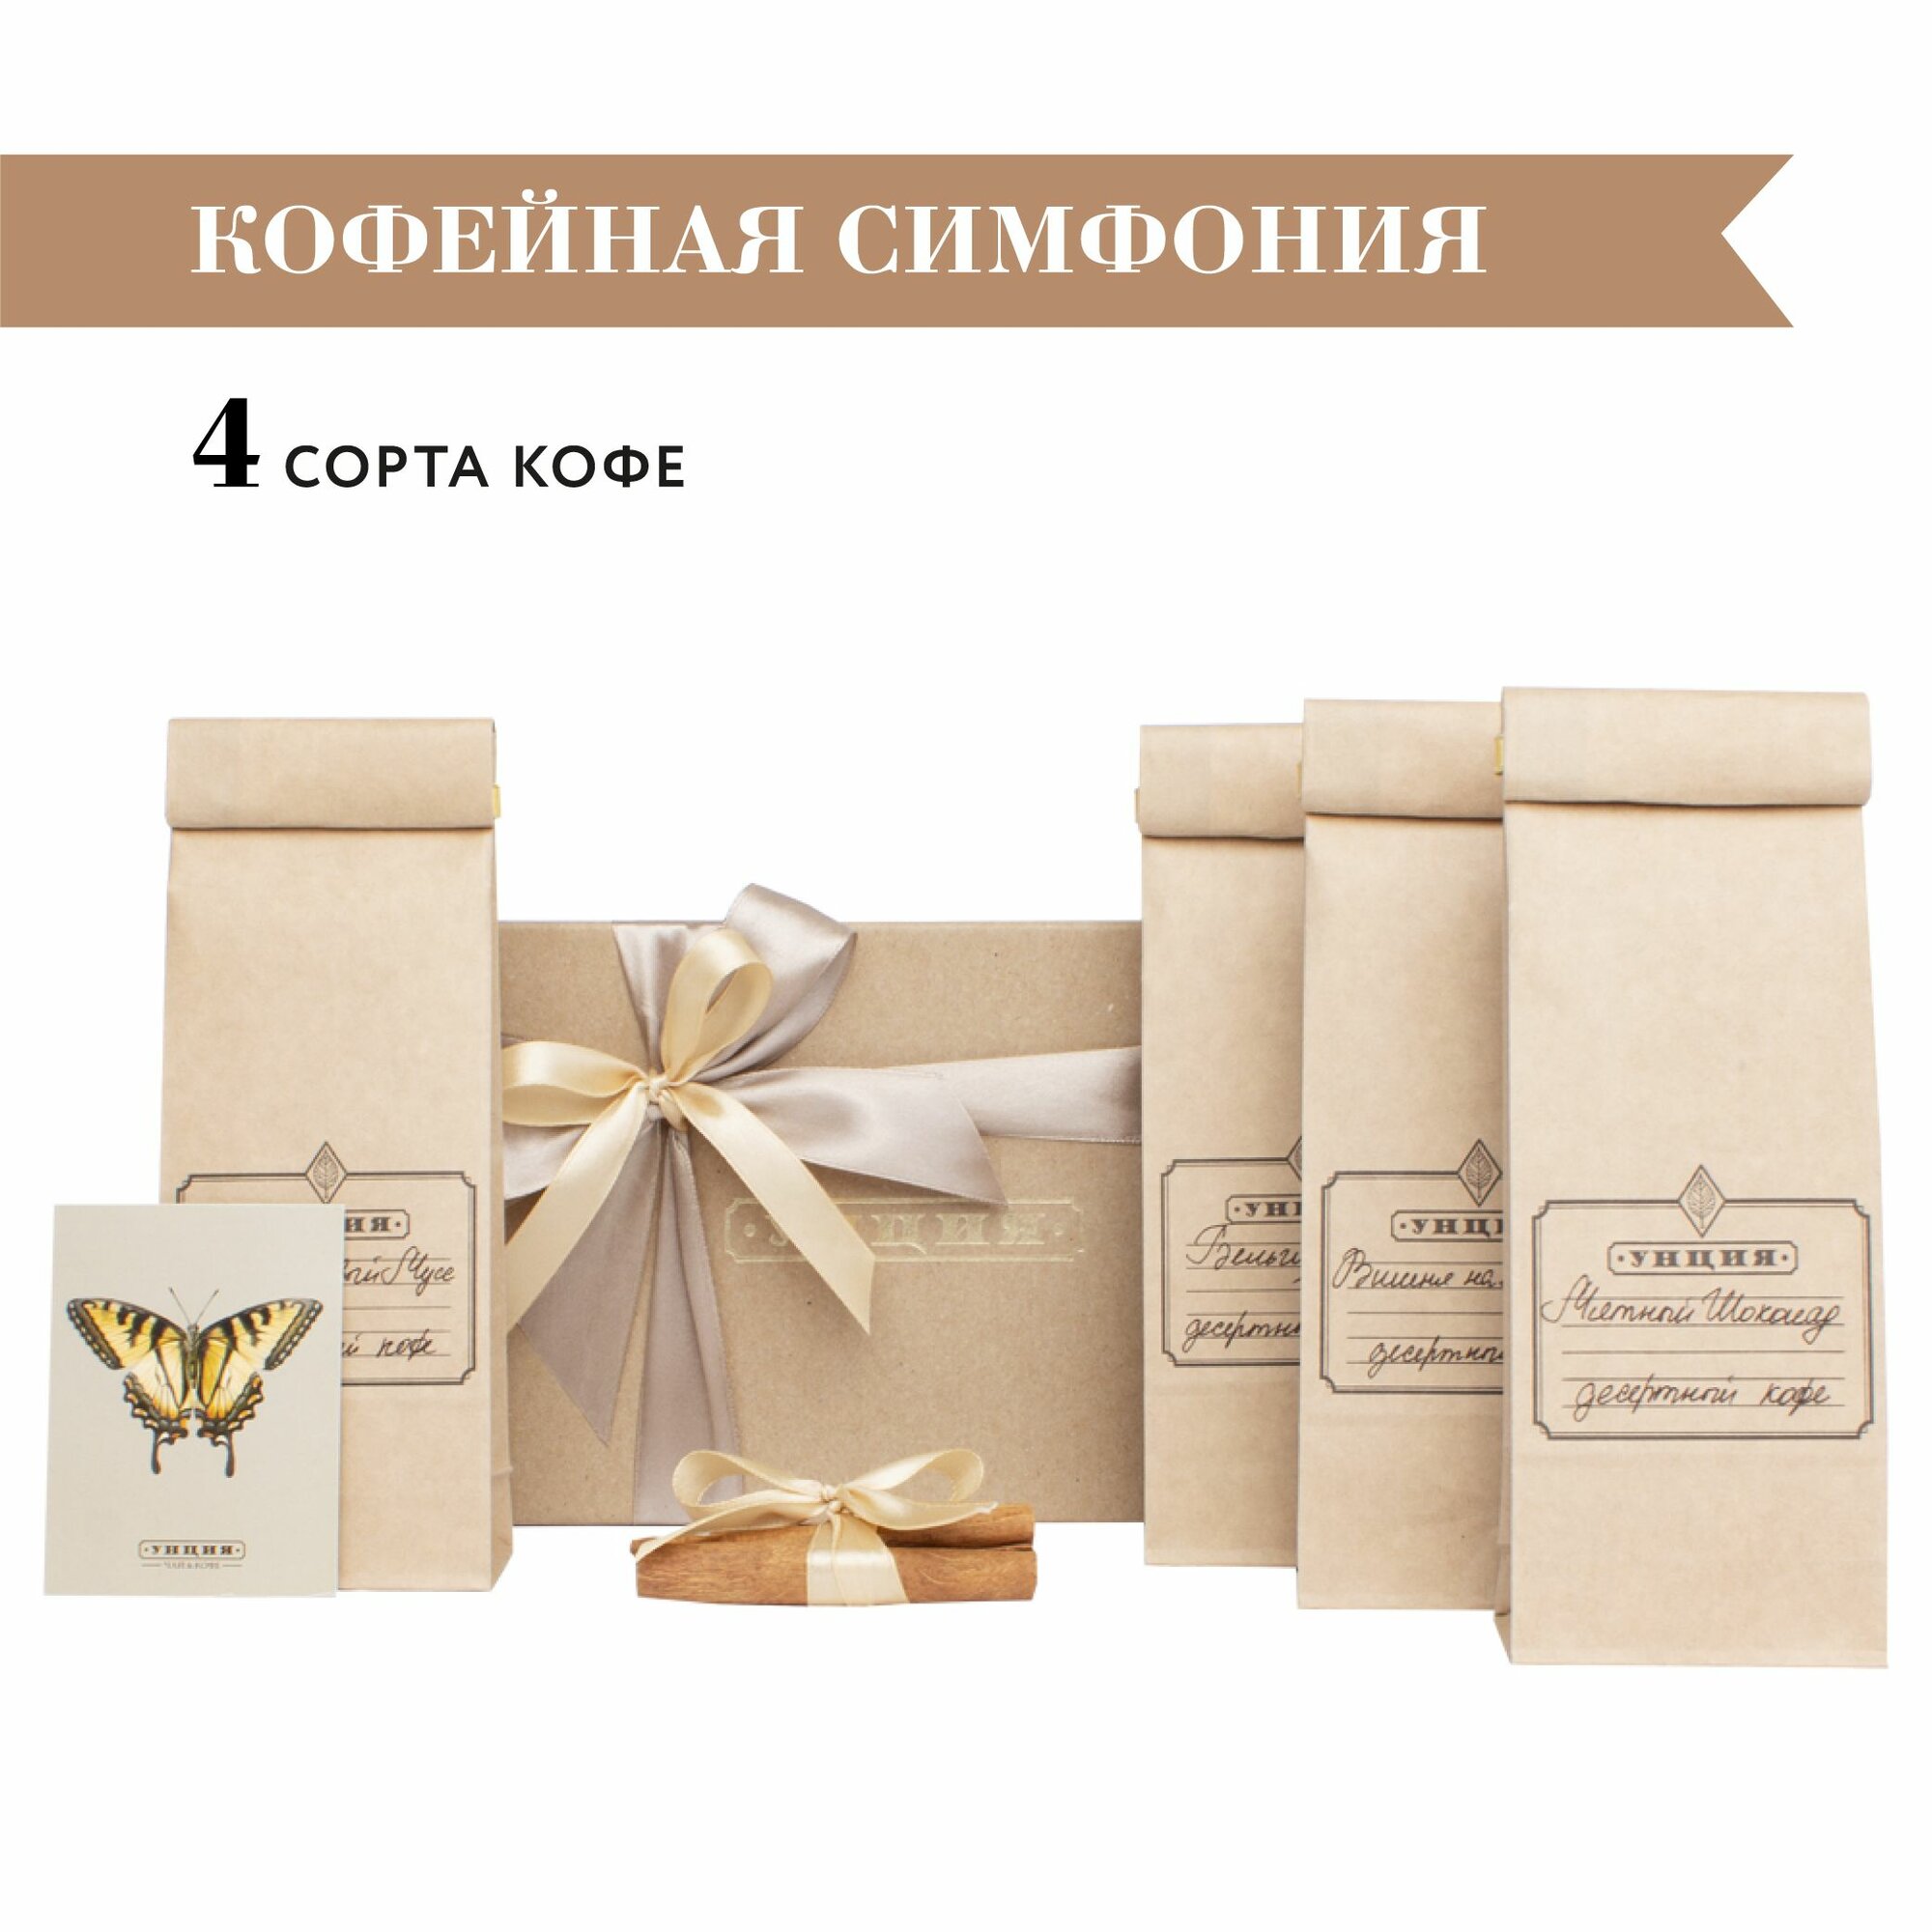 Подарочный набор "Кофейная симфония" с 4 сортами кофе, подарок на День Рождения или Выпускной